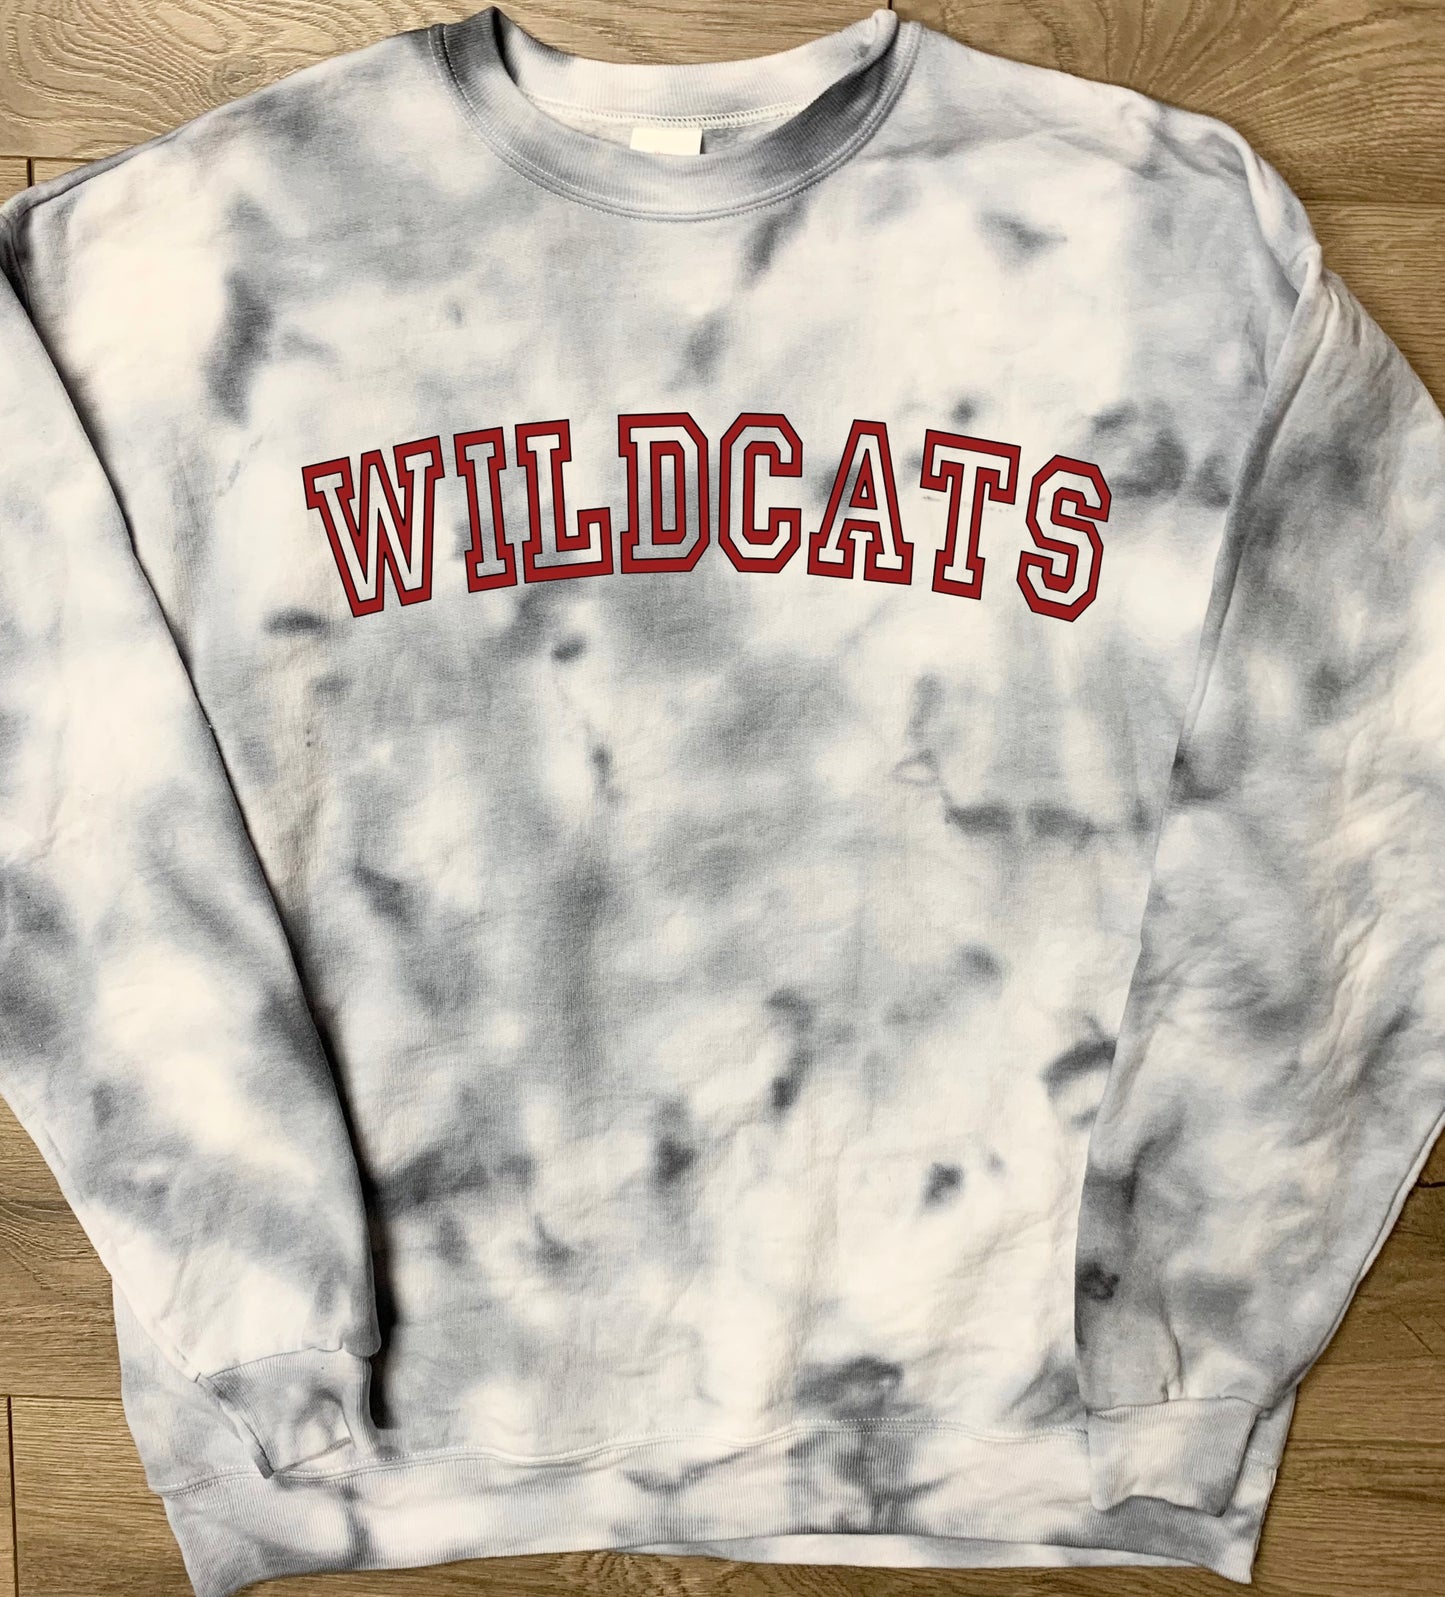 Hand-dyed Adult Newark Wildcats Gray Curved Block Wildcats Tie Dye Crewneck Sweatshirt